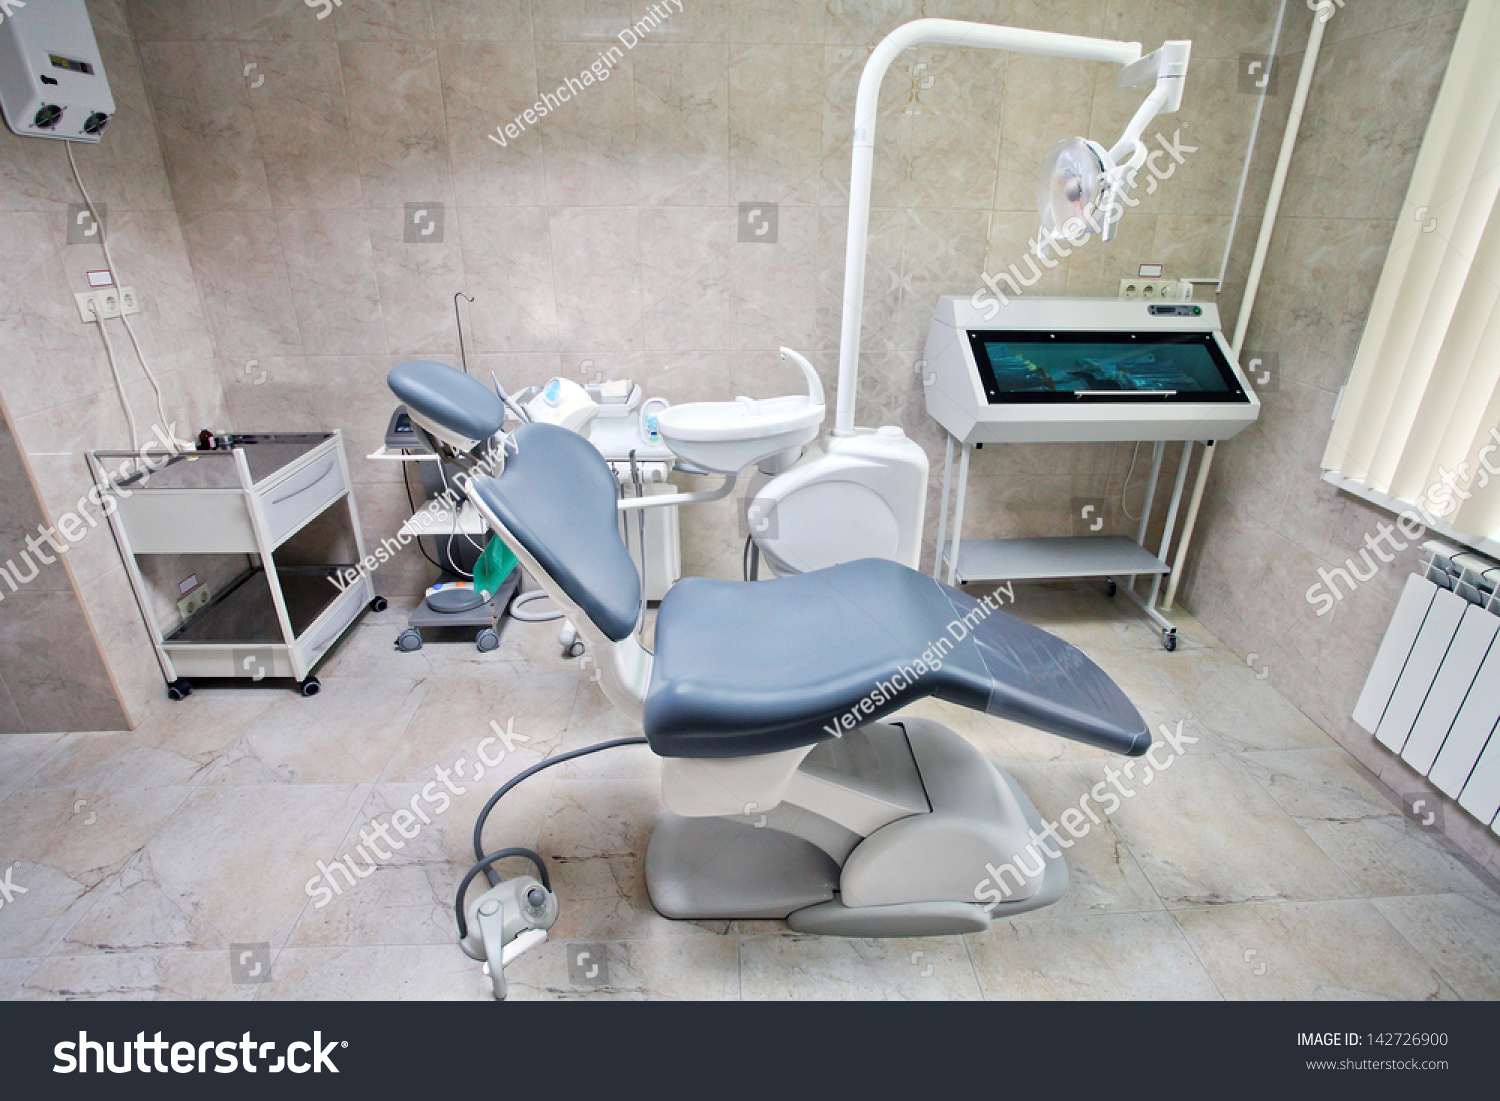 Подвод воды к стоматологическому креслу